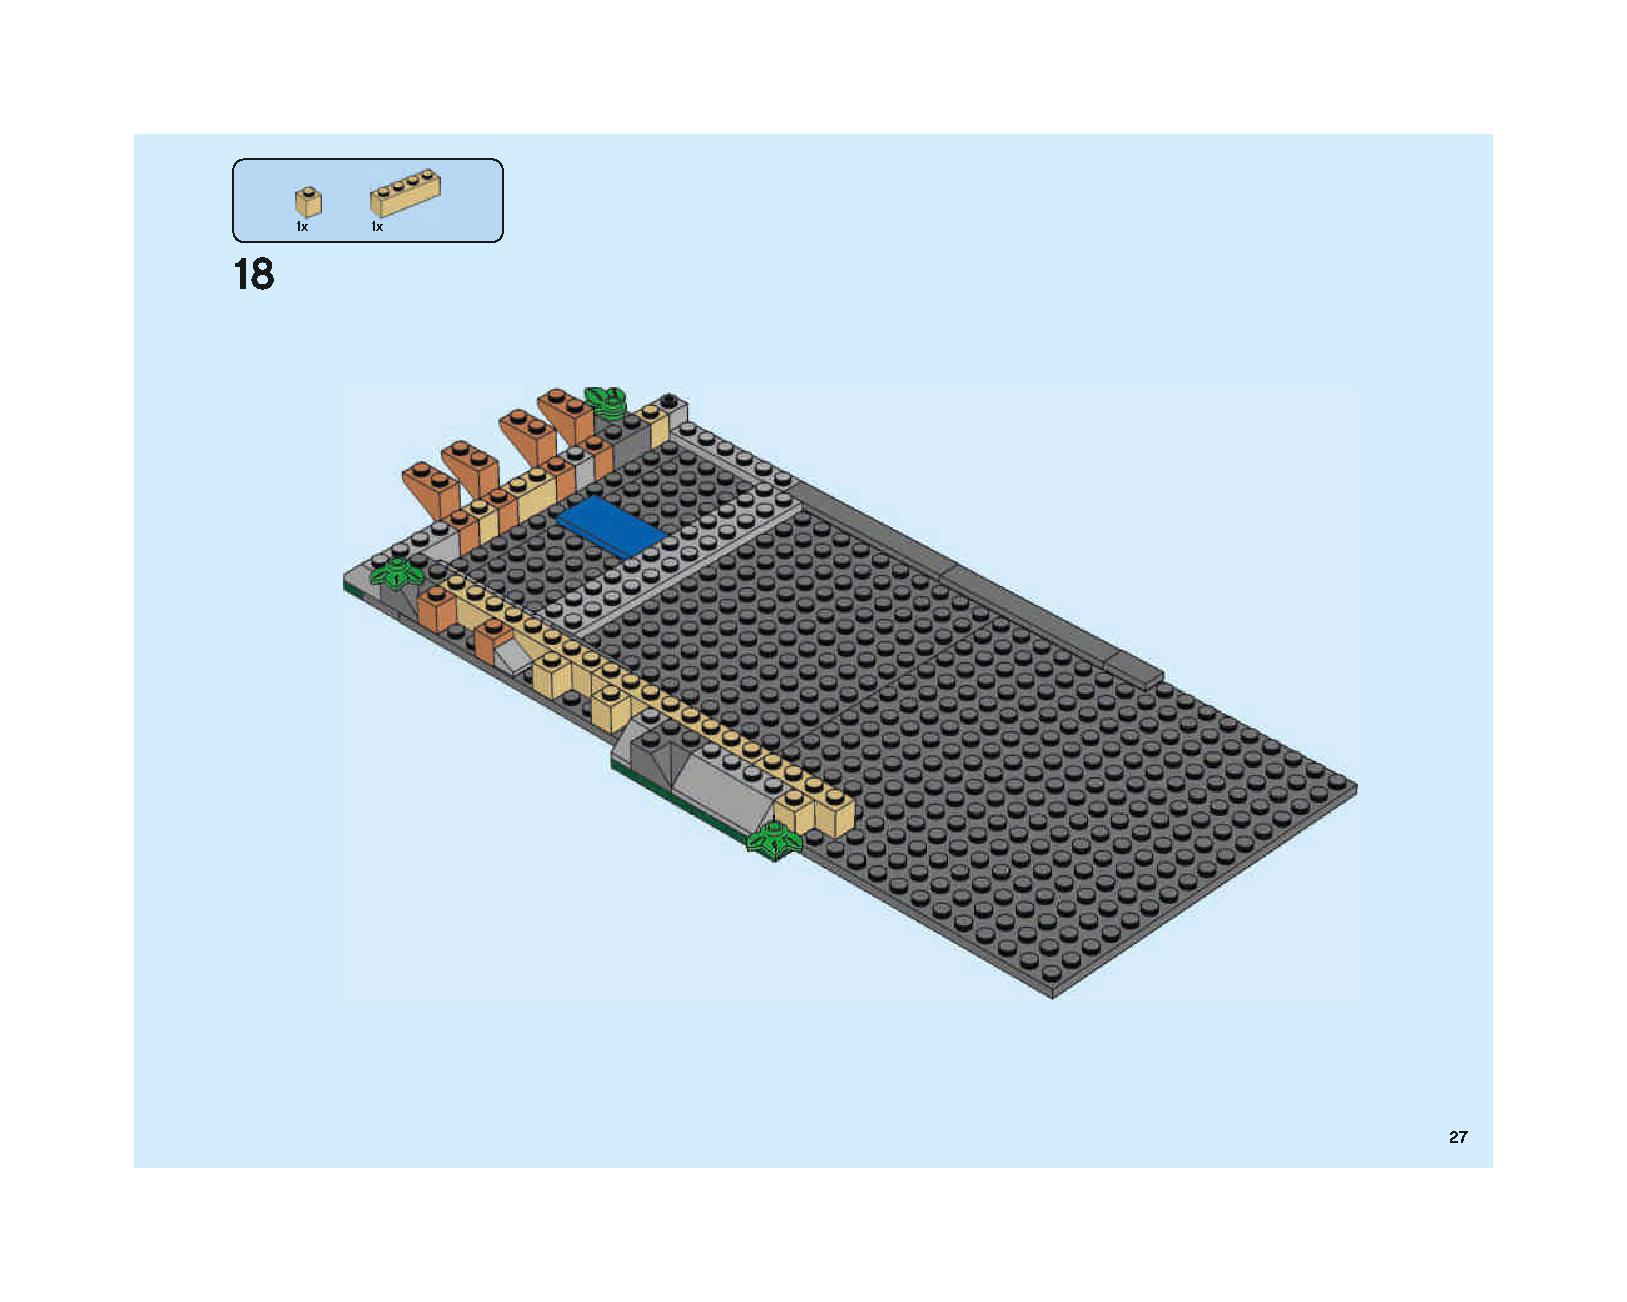 ホグワーツの大広間 75954 レゴの商品情報 レゴの説明書・組立方法 27 page